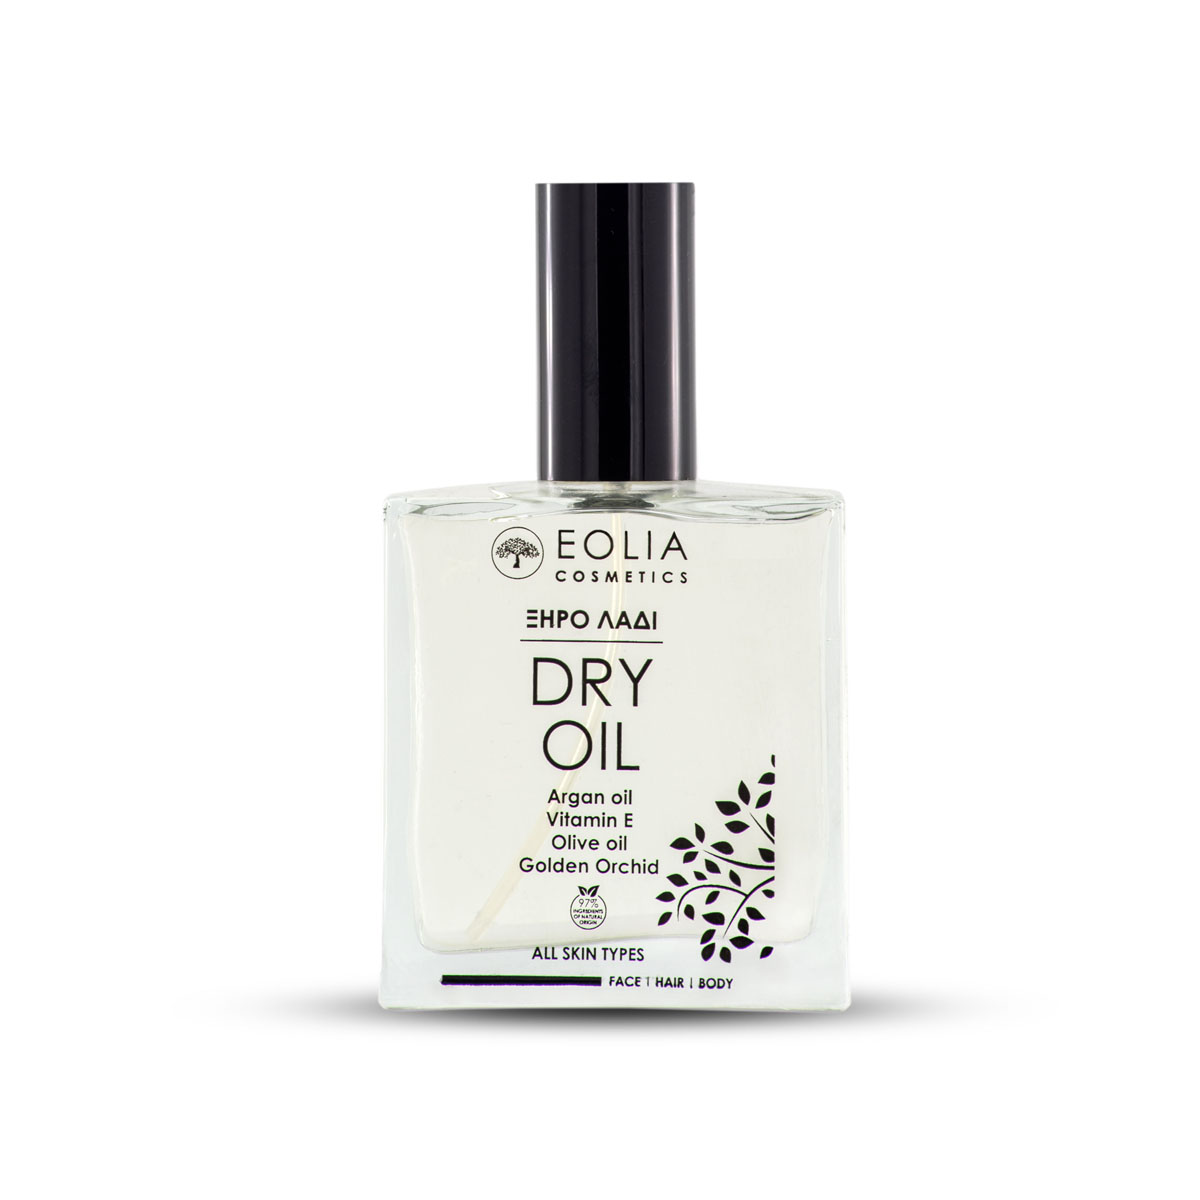 Eolia dry oil ochidea